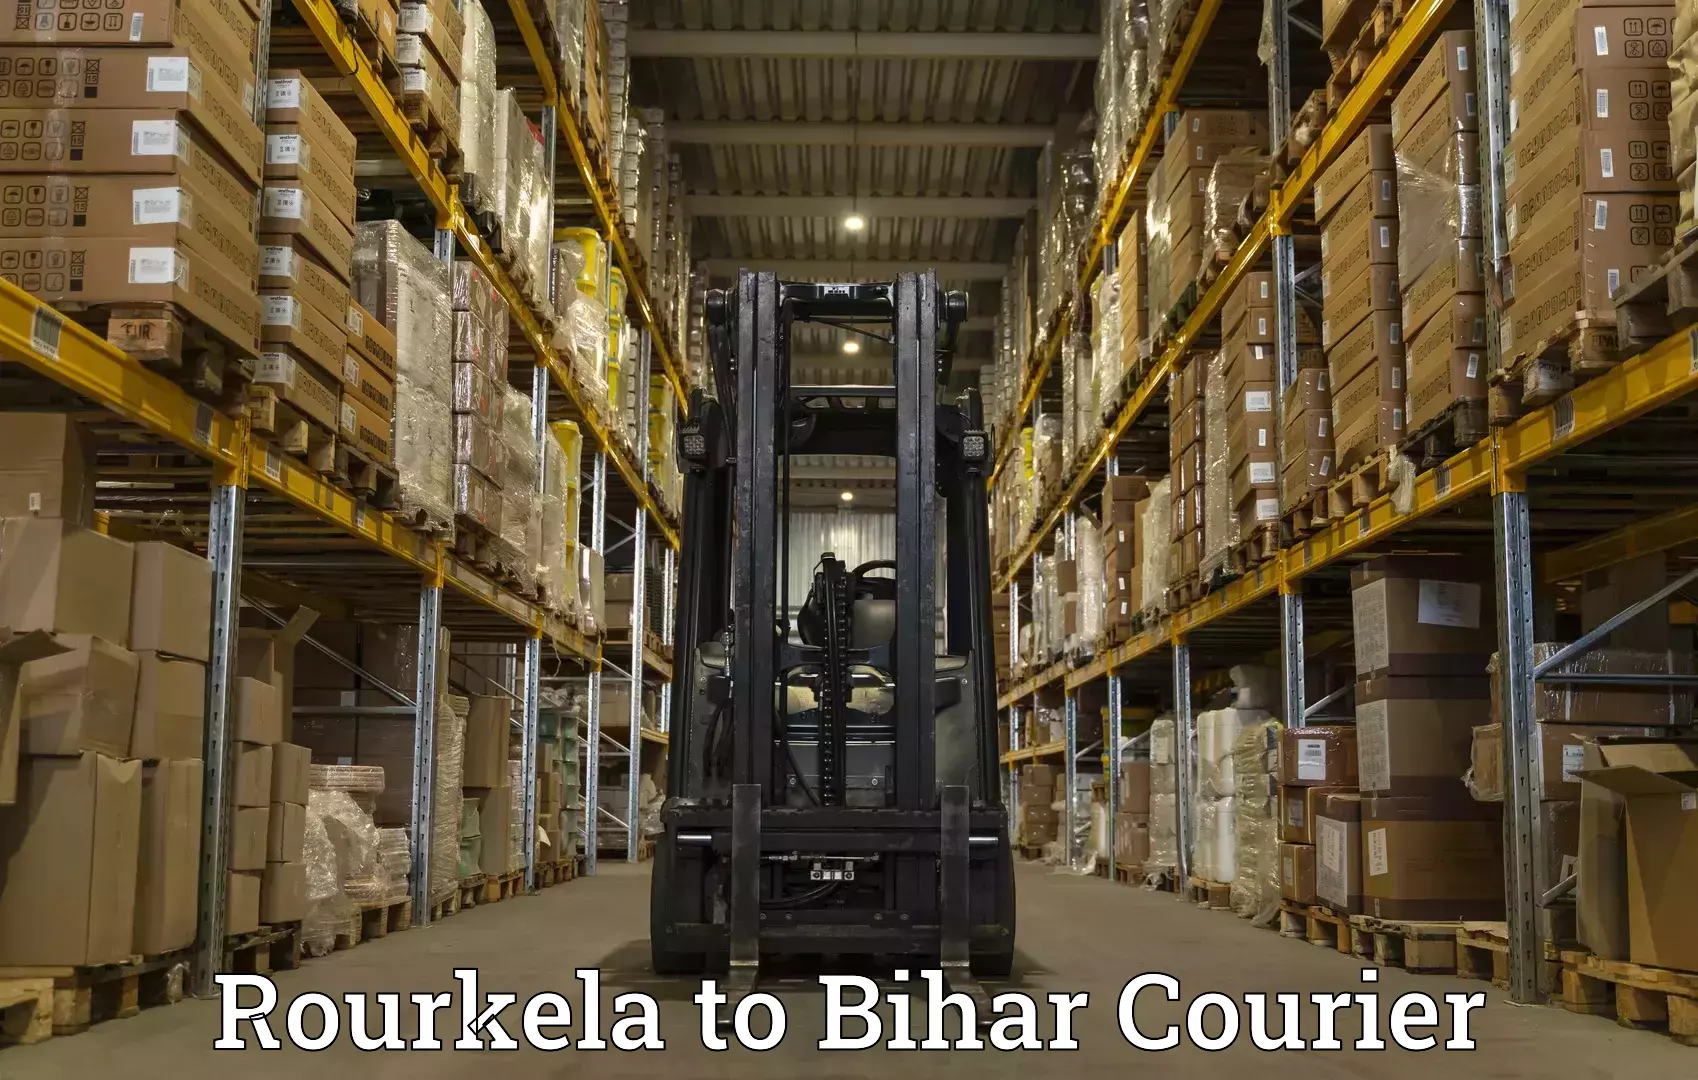 International courier networks Rourkela to Birpur